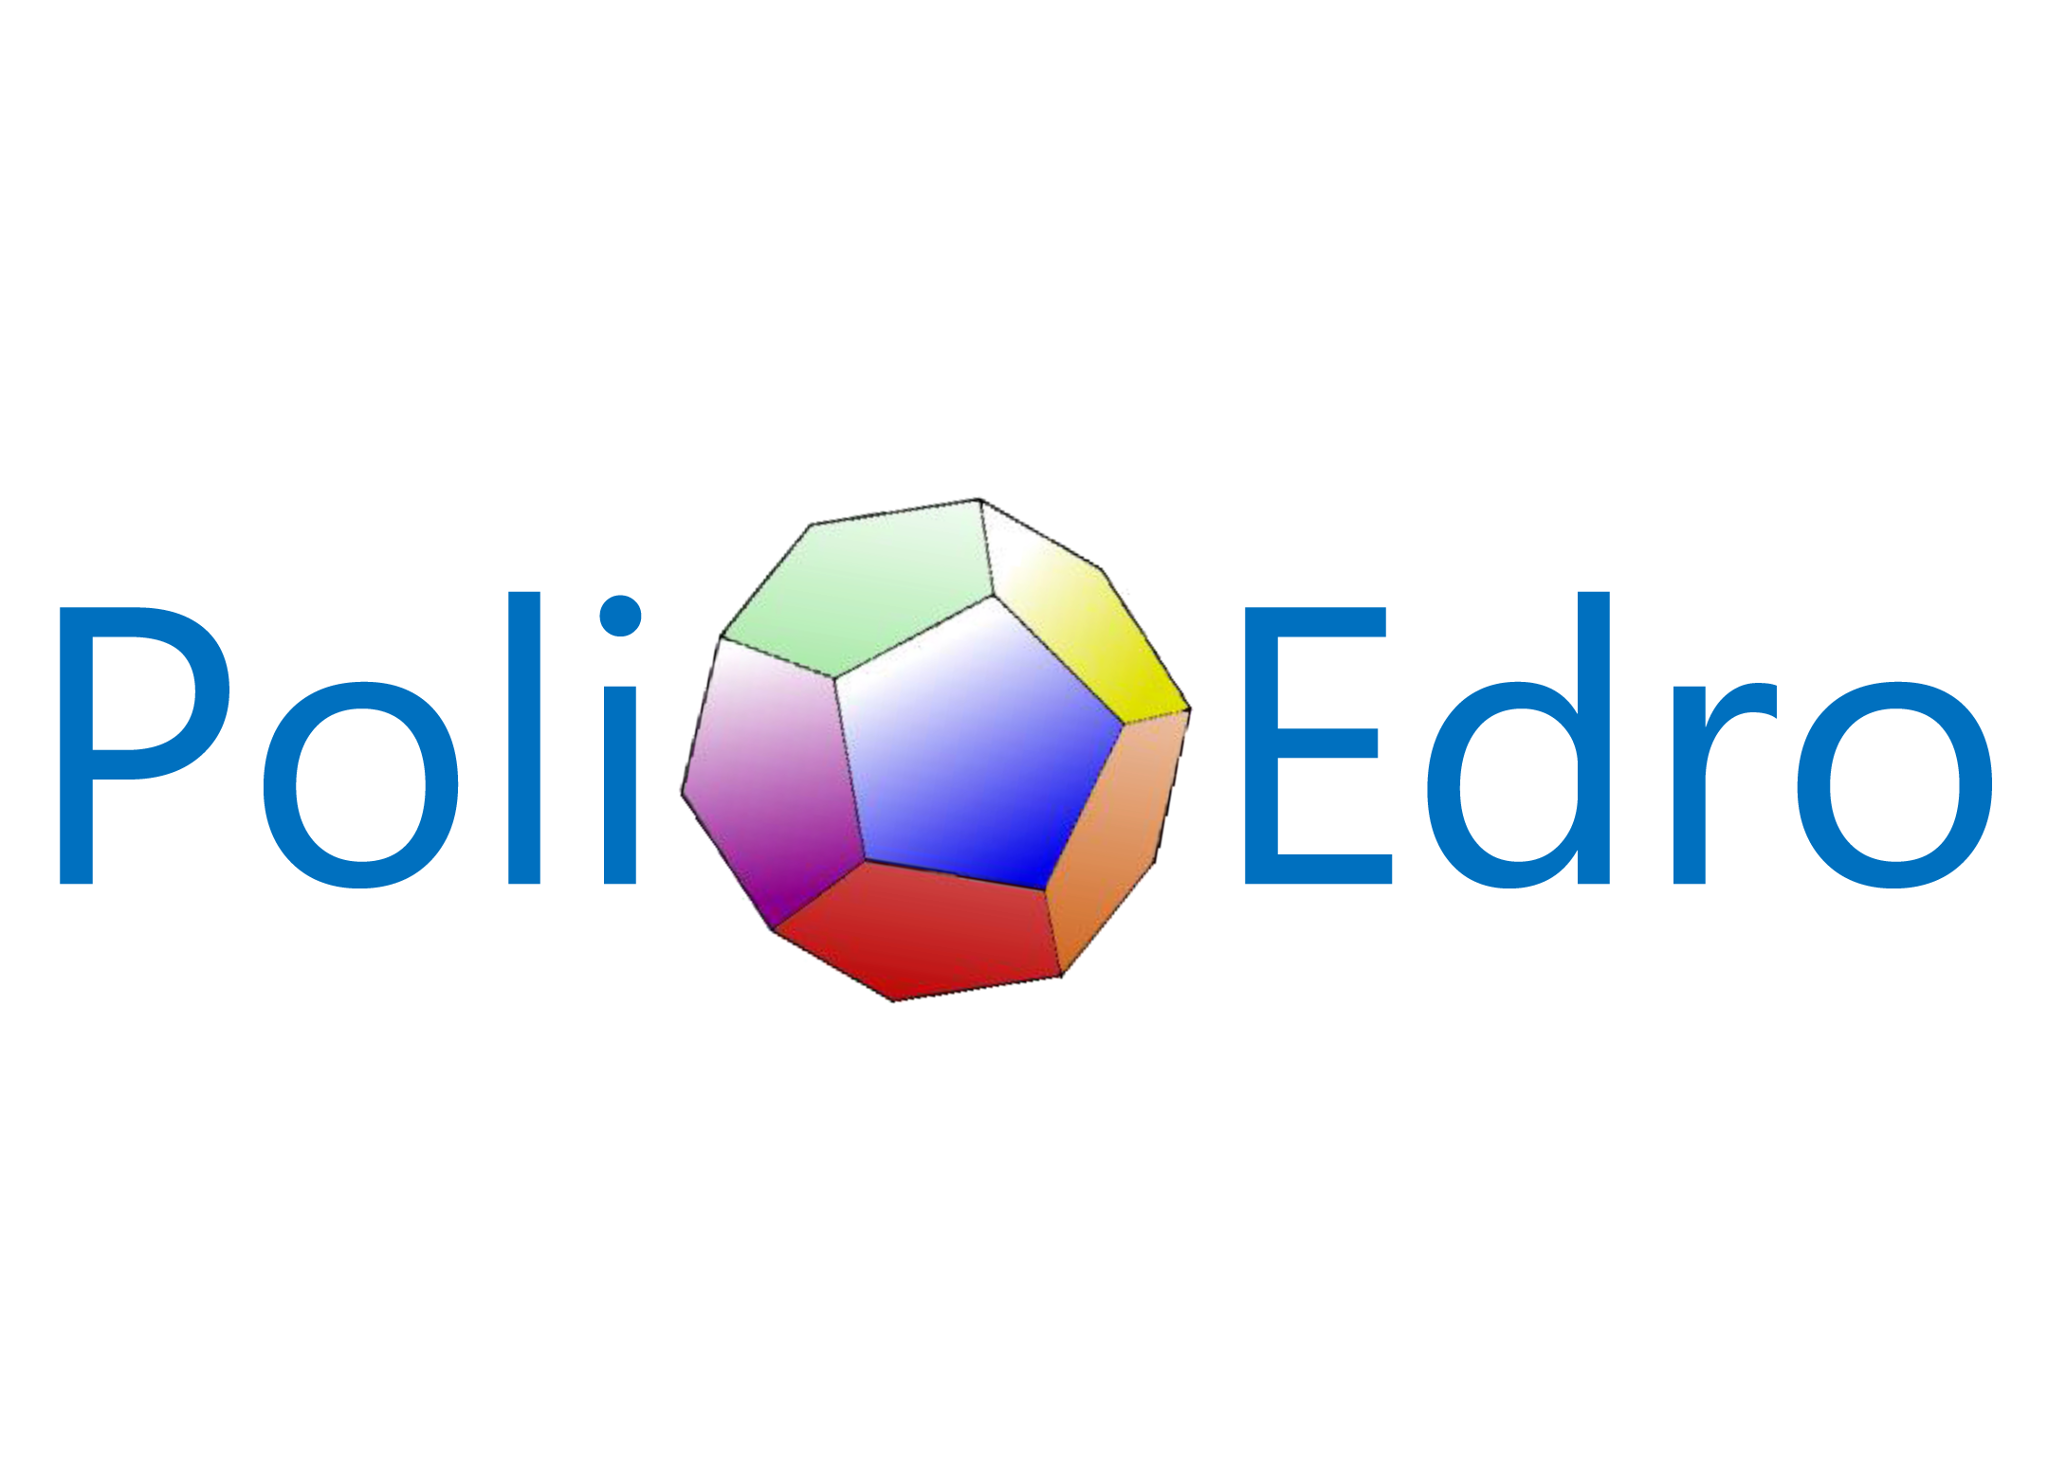 First PoliEdro logo